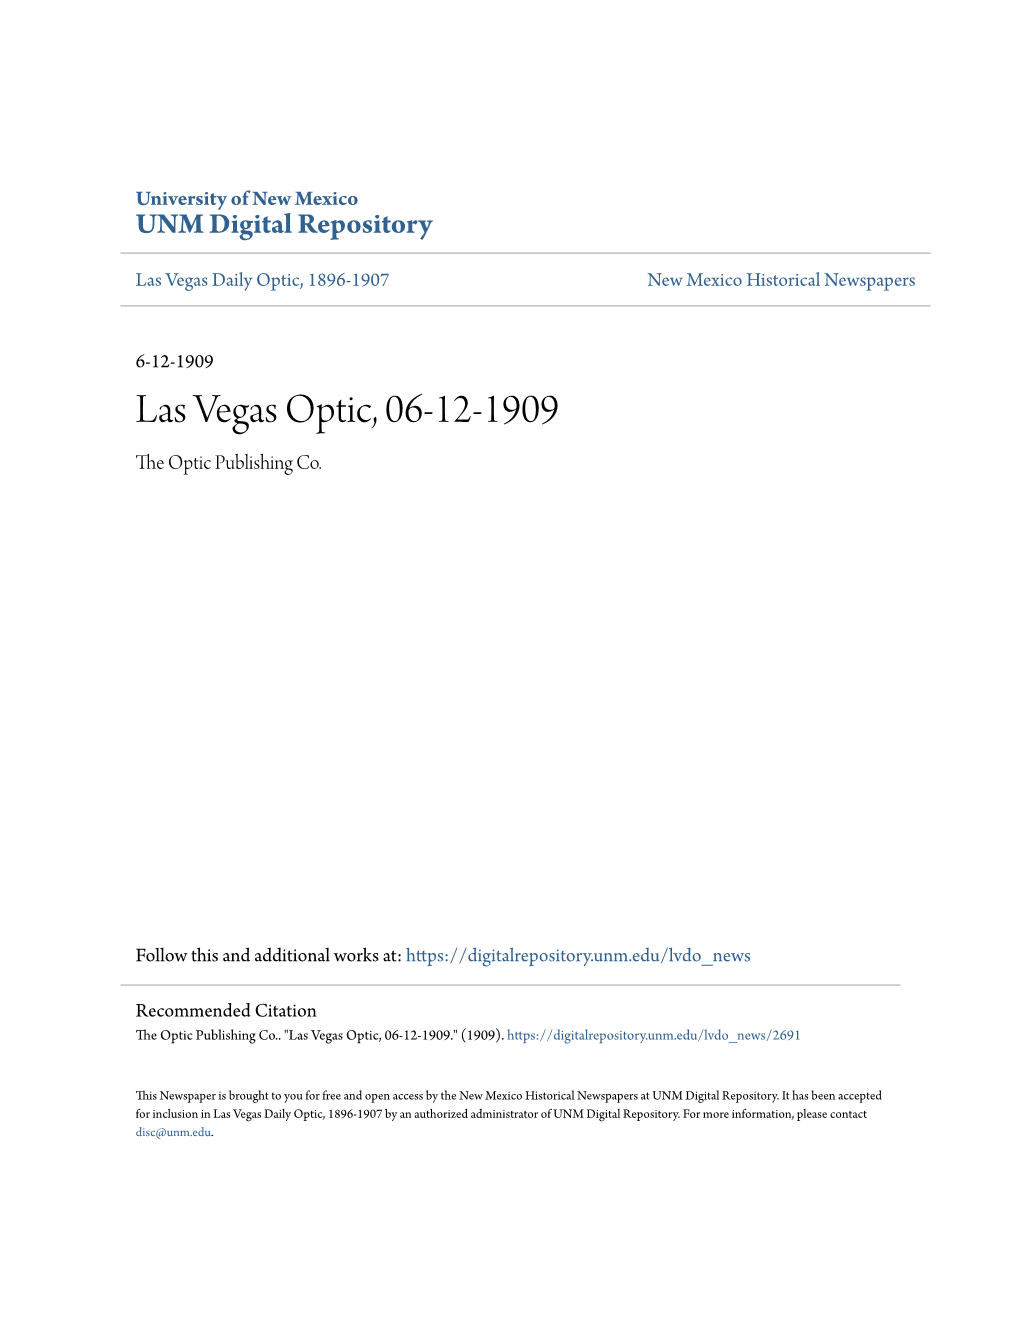 Las Vegas Optic, 06-12-1909 the Optic Publishing Co